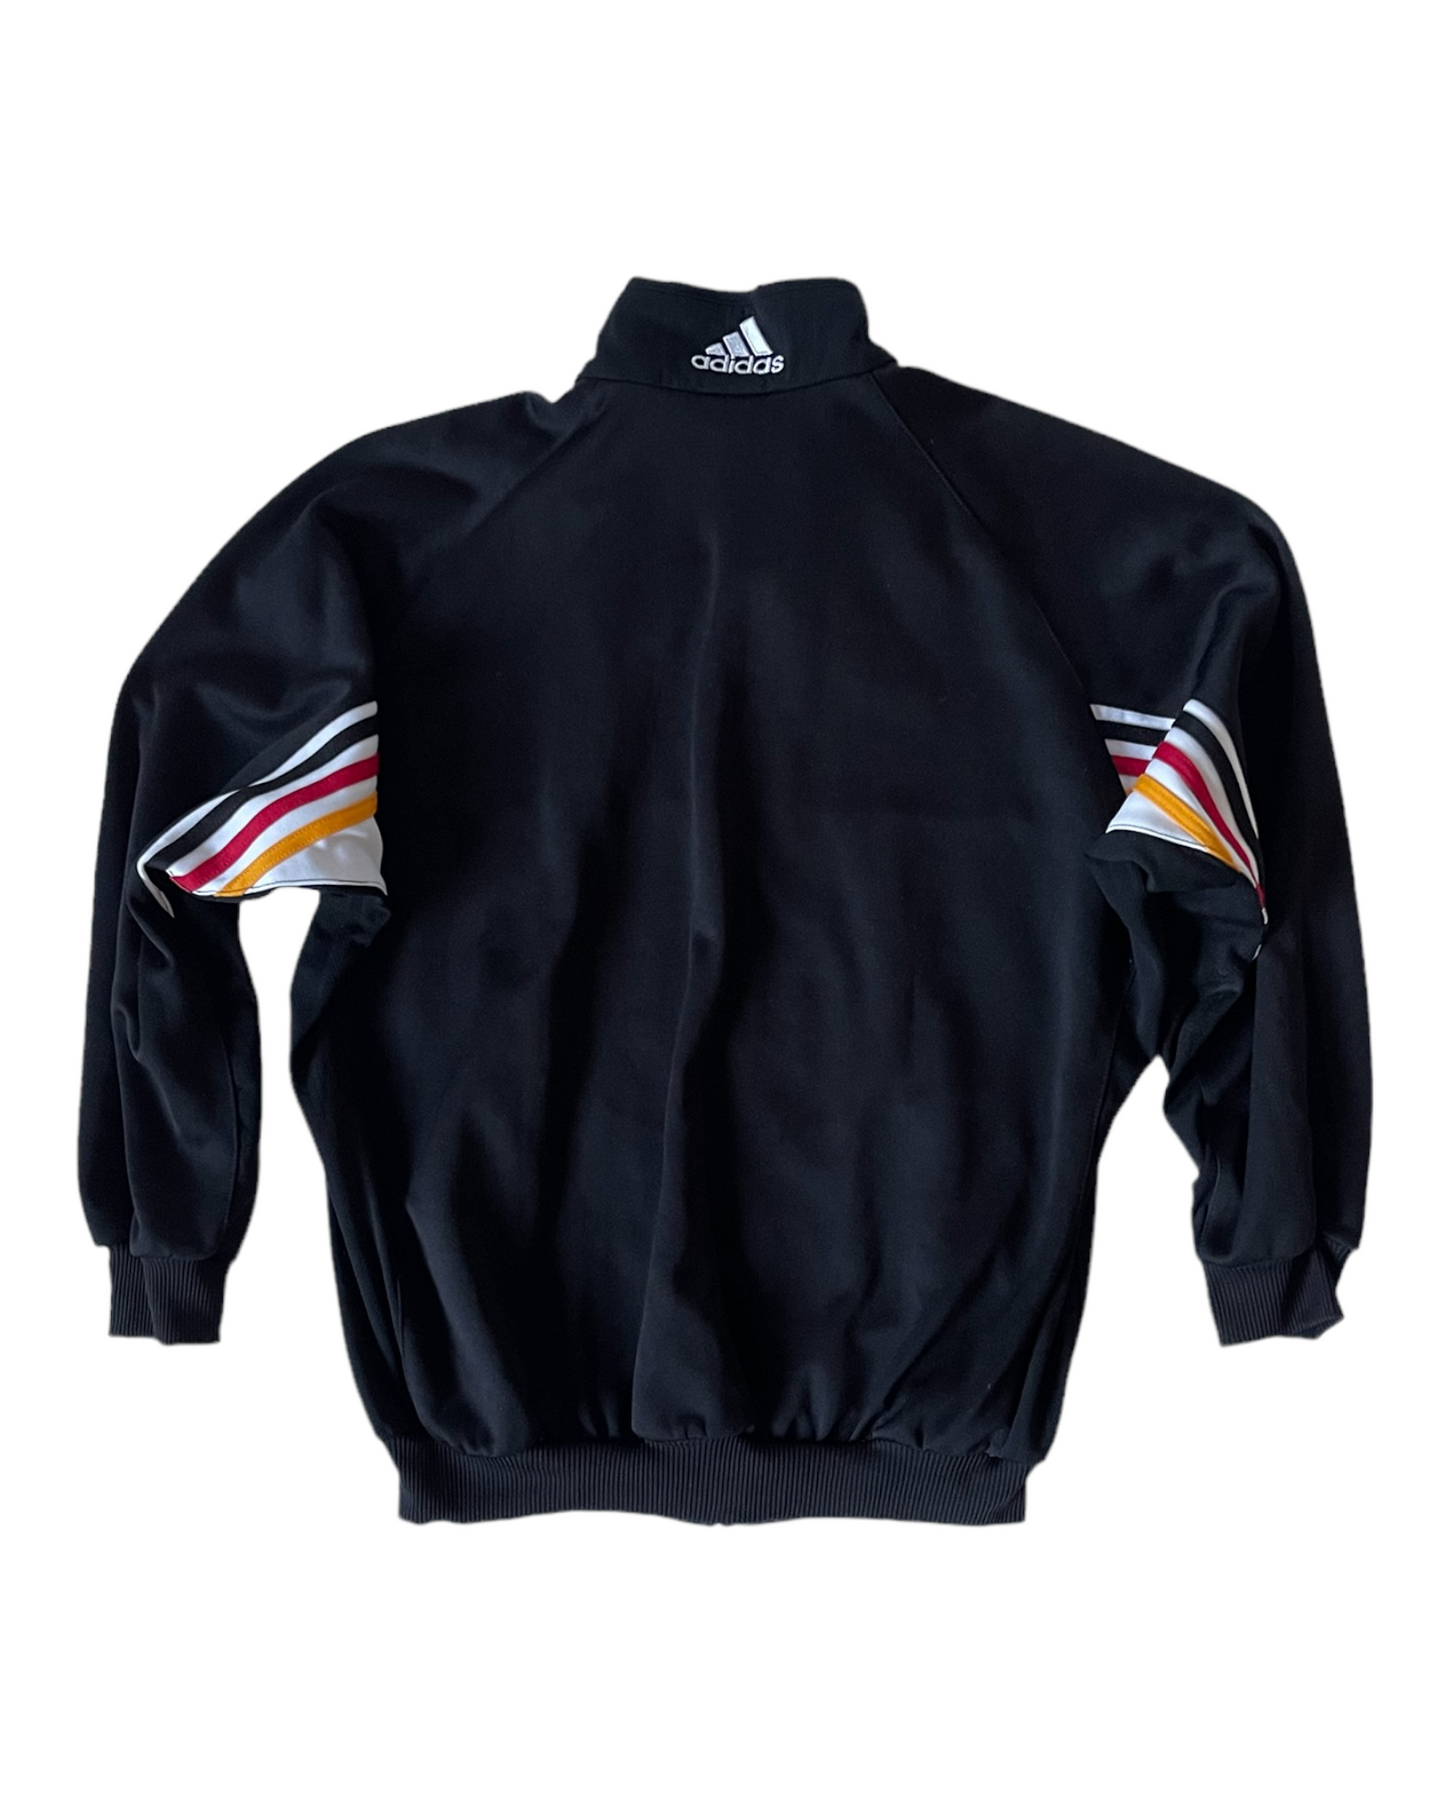 Vintage Germany Adidas 1998-1999 Jacket Size M Black White